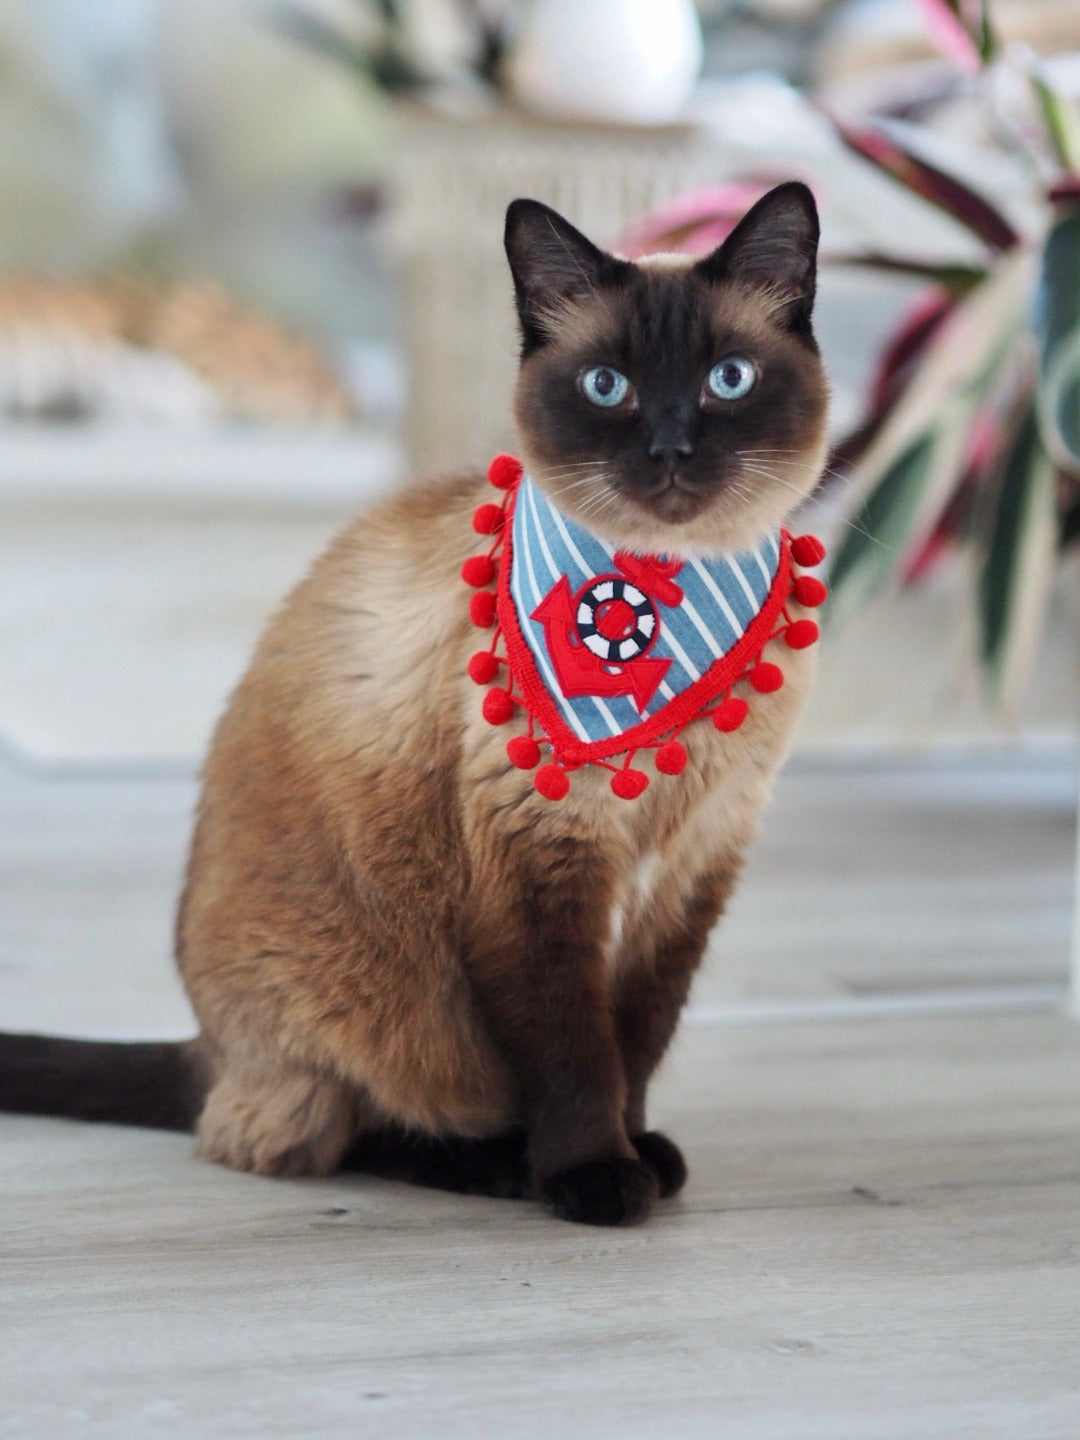 Siamkatze trägt blau weiß gestreiftes Katzenhalstuch mit Anker und roter Bommelborte